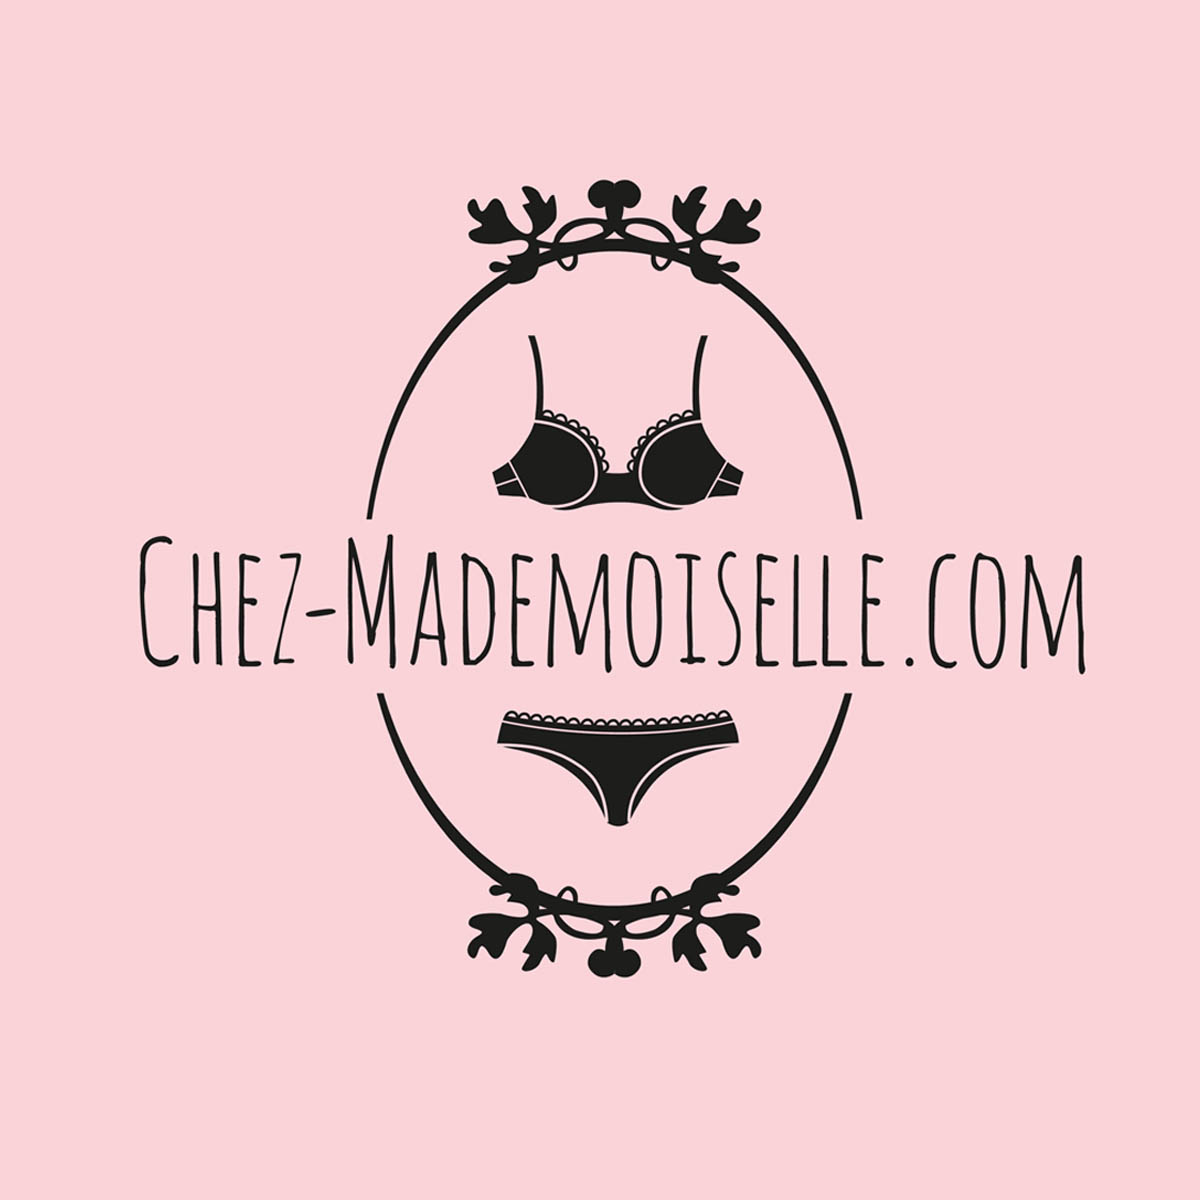 Lingerie shop Chez mademoiselle